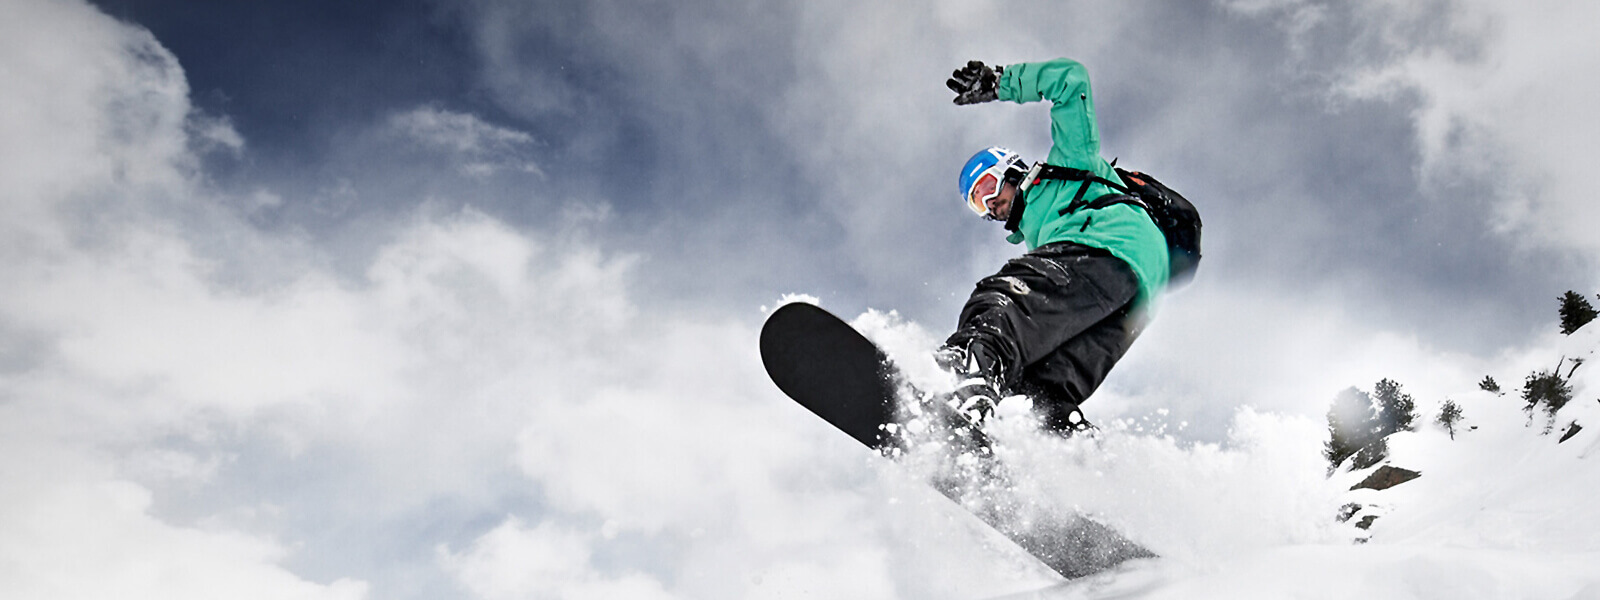 Froschperspektive: Snowboarder in grüner Jacke kommt von oben über eine Kuppe gesprungen	 Brettunterseite und viel aufgewirbelter Schnee sind zu sehen